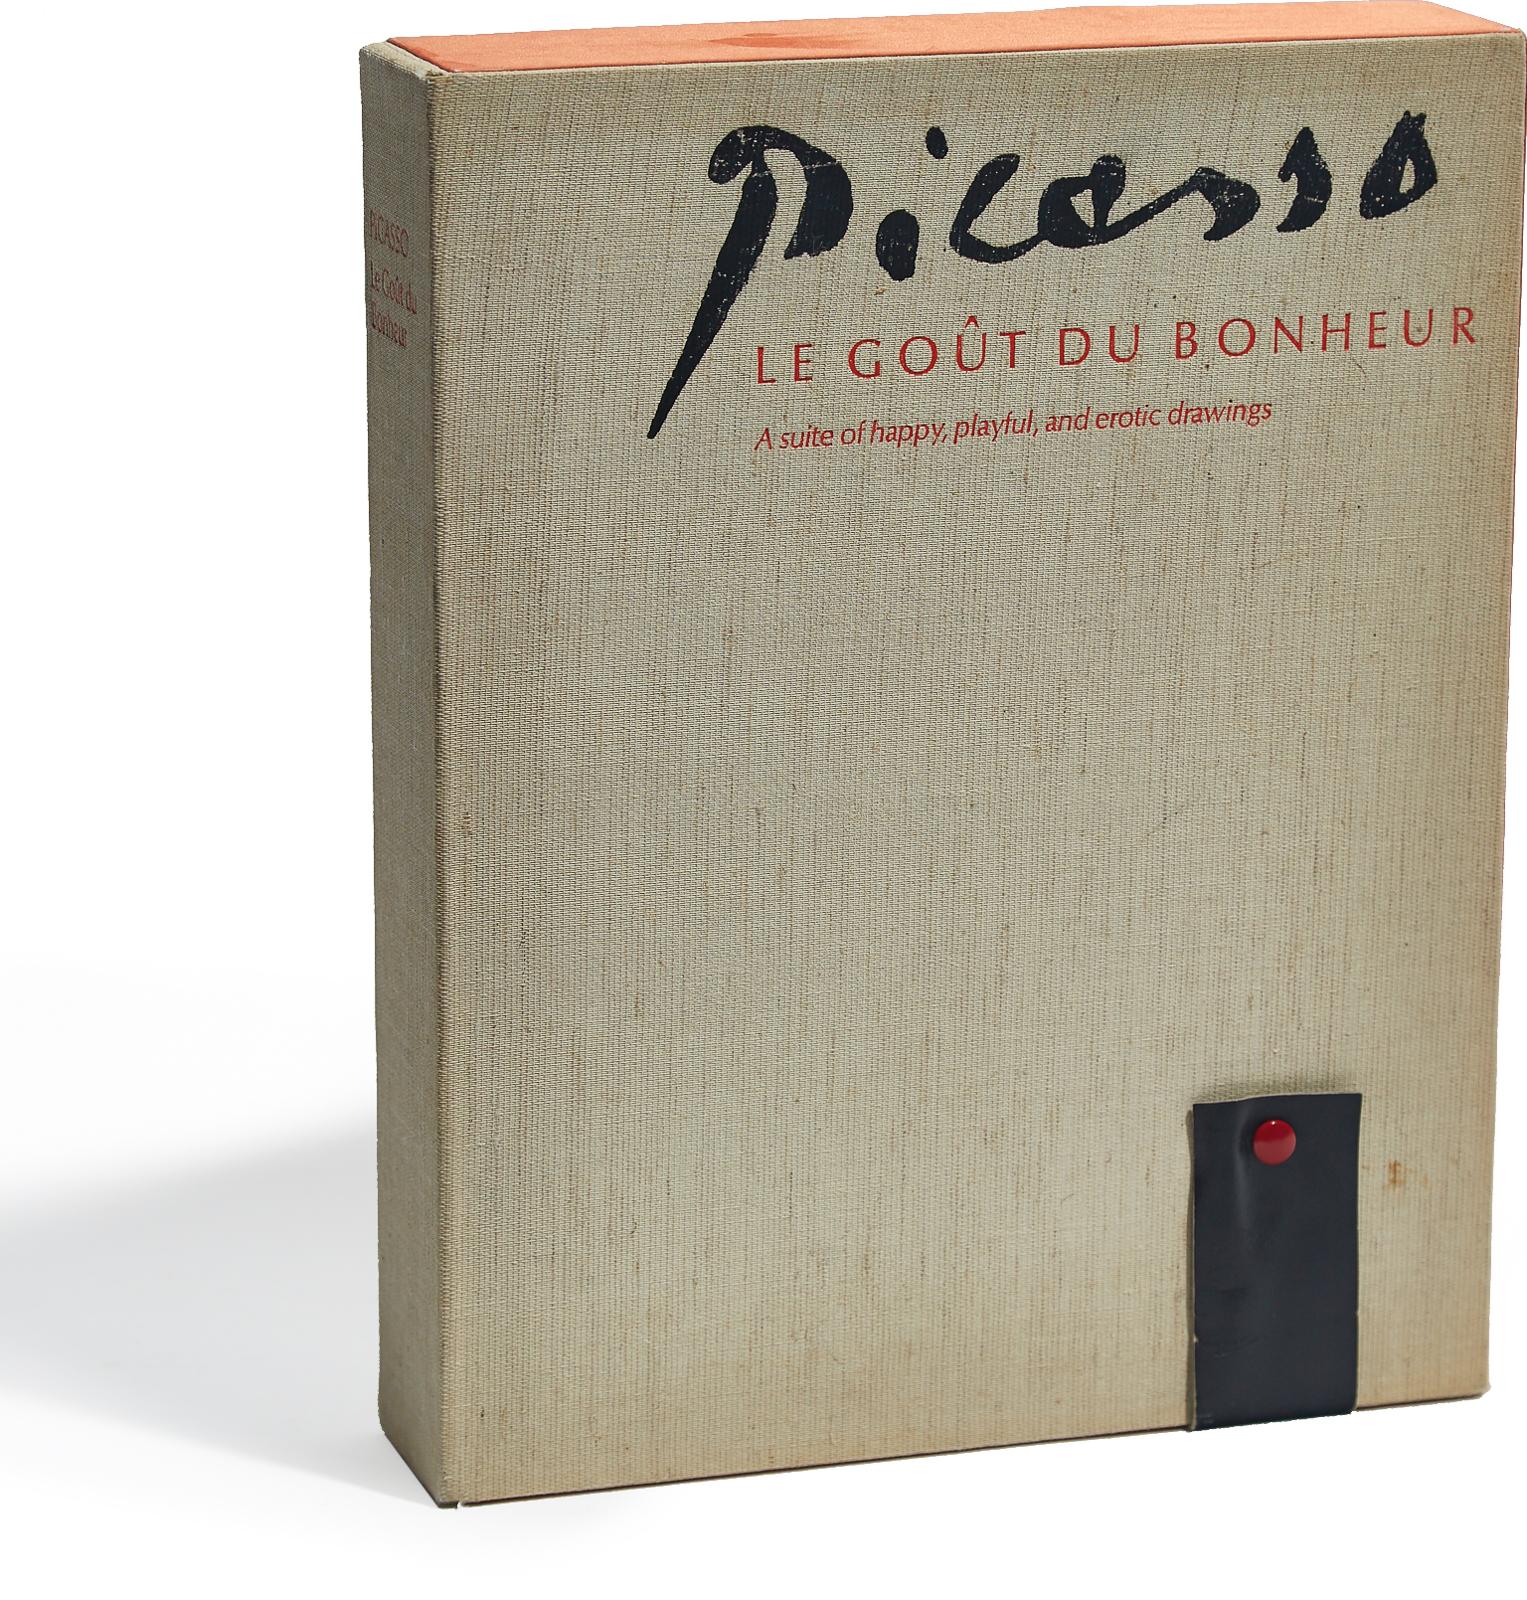 Pablo Ruiz Picasso (1881-1973) - Le Gout Du Bonheur (A Suite Of Happy, Playful And Erotic Drawings), 1970 [bloch, 2013]